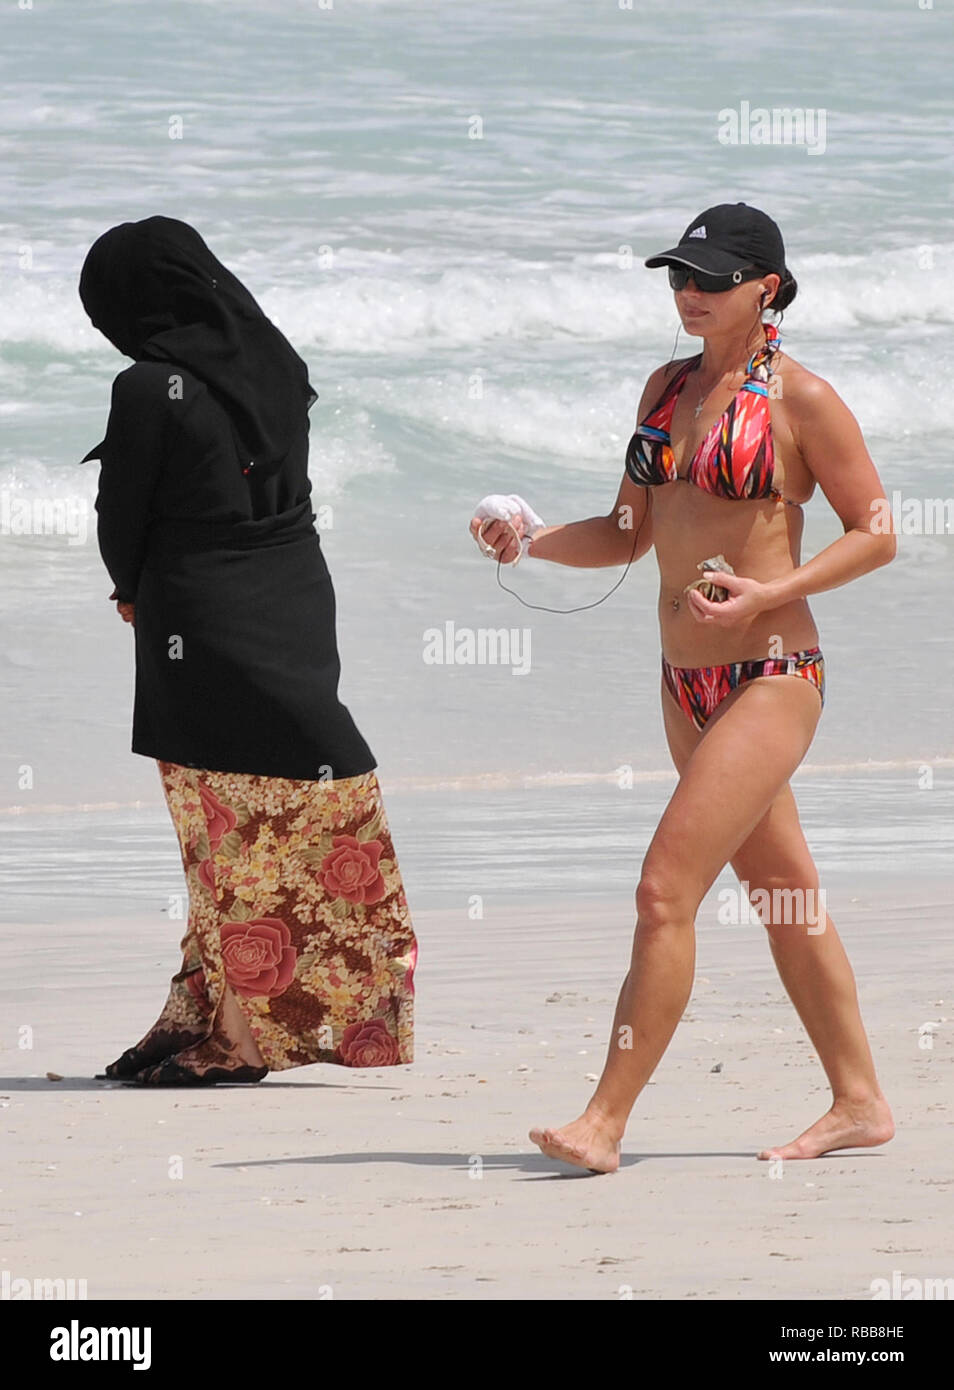 a Andrew Parsons Parsons / Medios de Comunicación. 14/05/2009. Dubai, Emiratos Árabes Unidos. mujer en bikini camina pasado un damas una abaya en una playa de Dubai como el